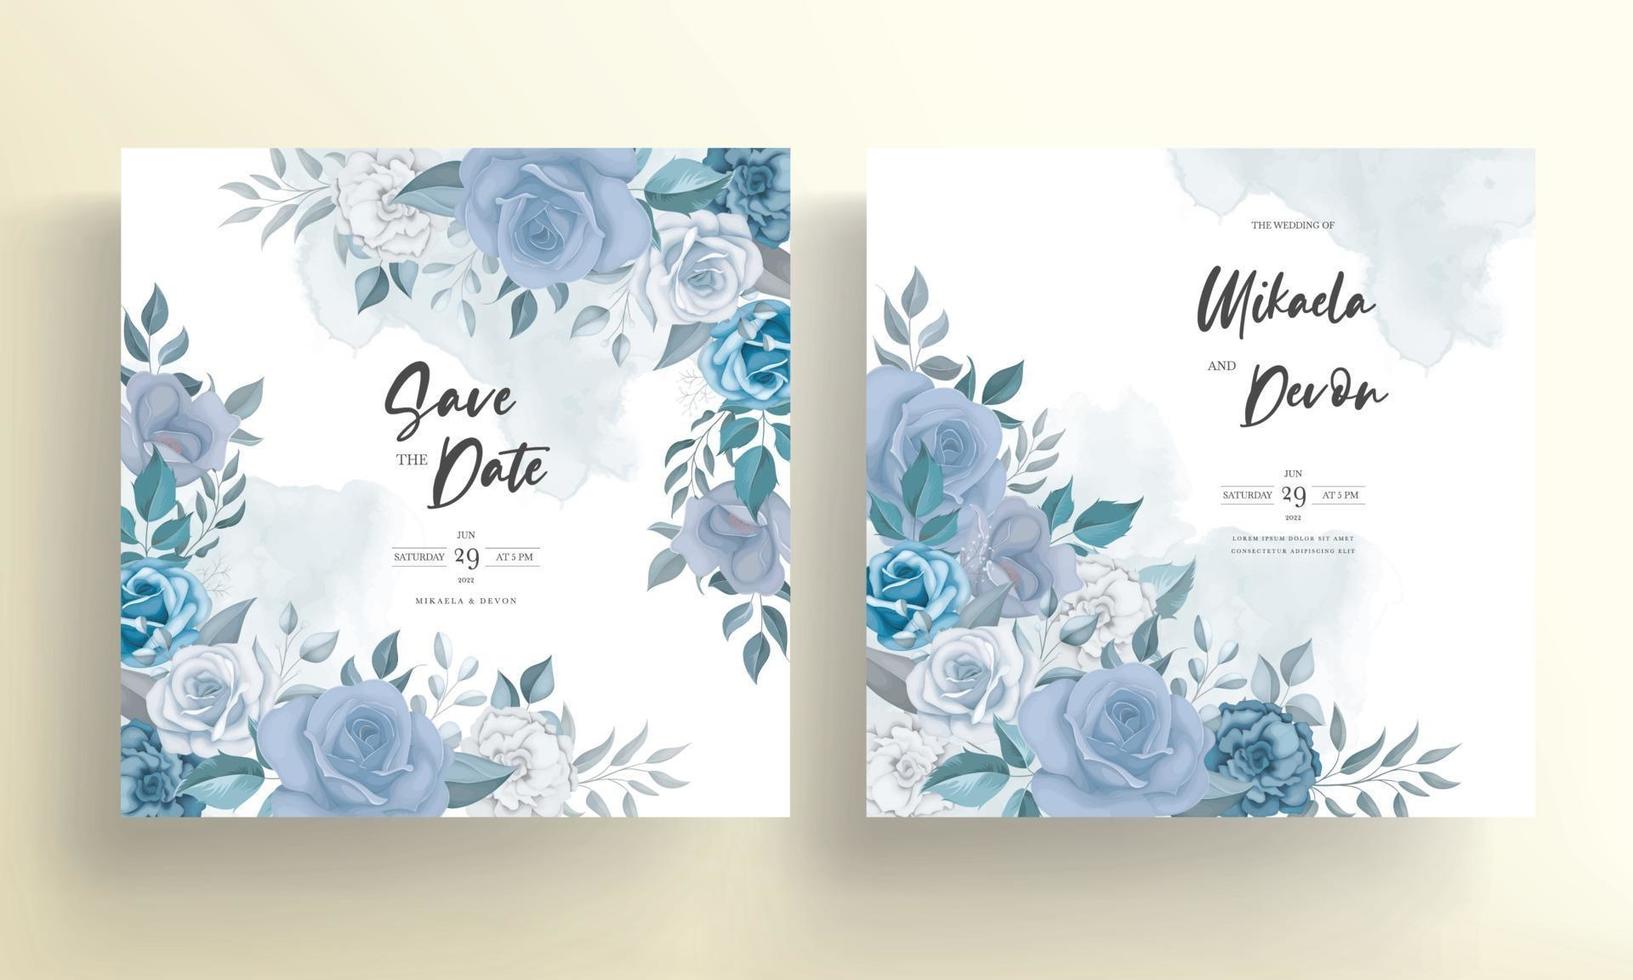 carta di invito a nozze con bellissime decorazioni floreali vettore